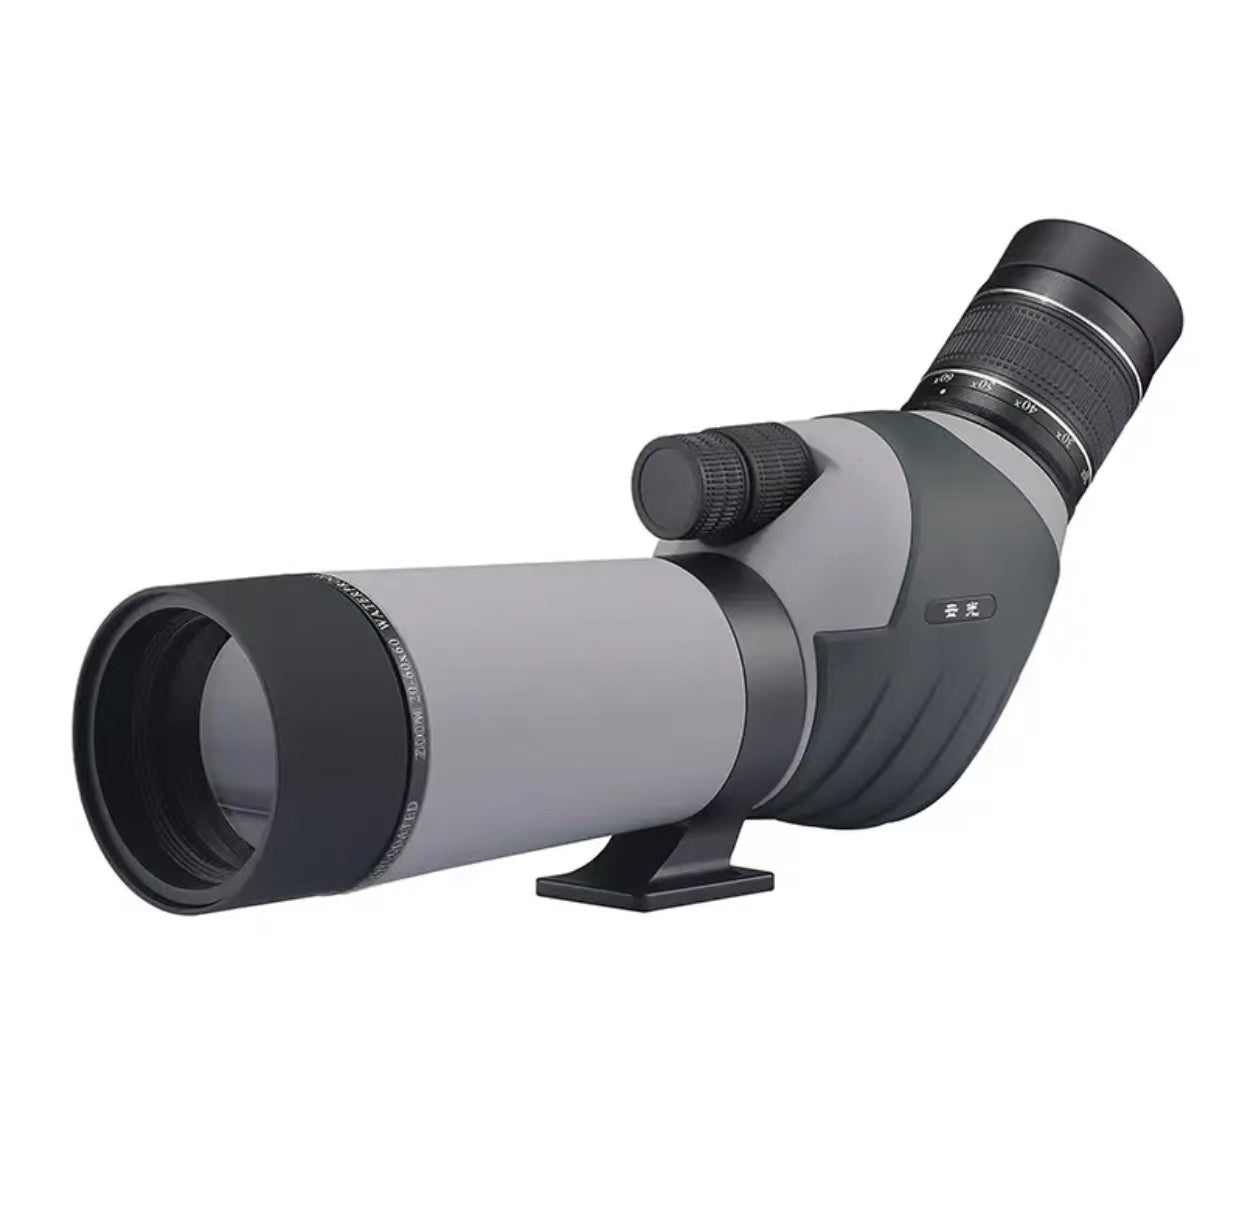 High power HD professional photo zoom bird watching target telescope - Duo Fashion